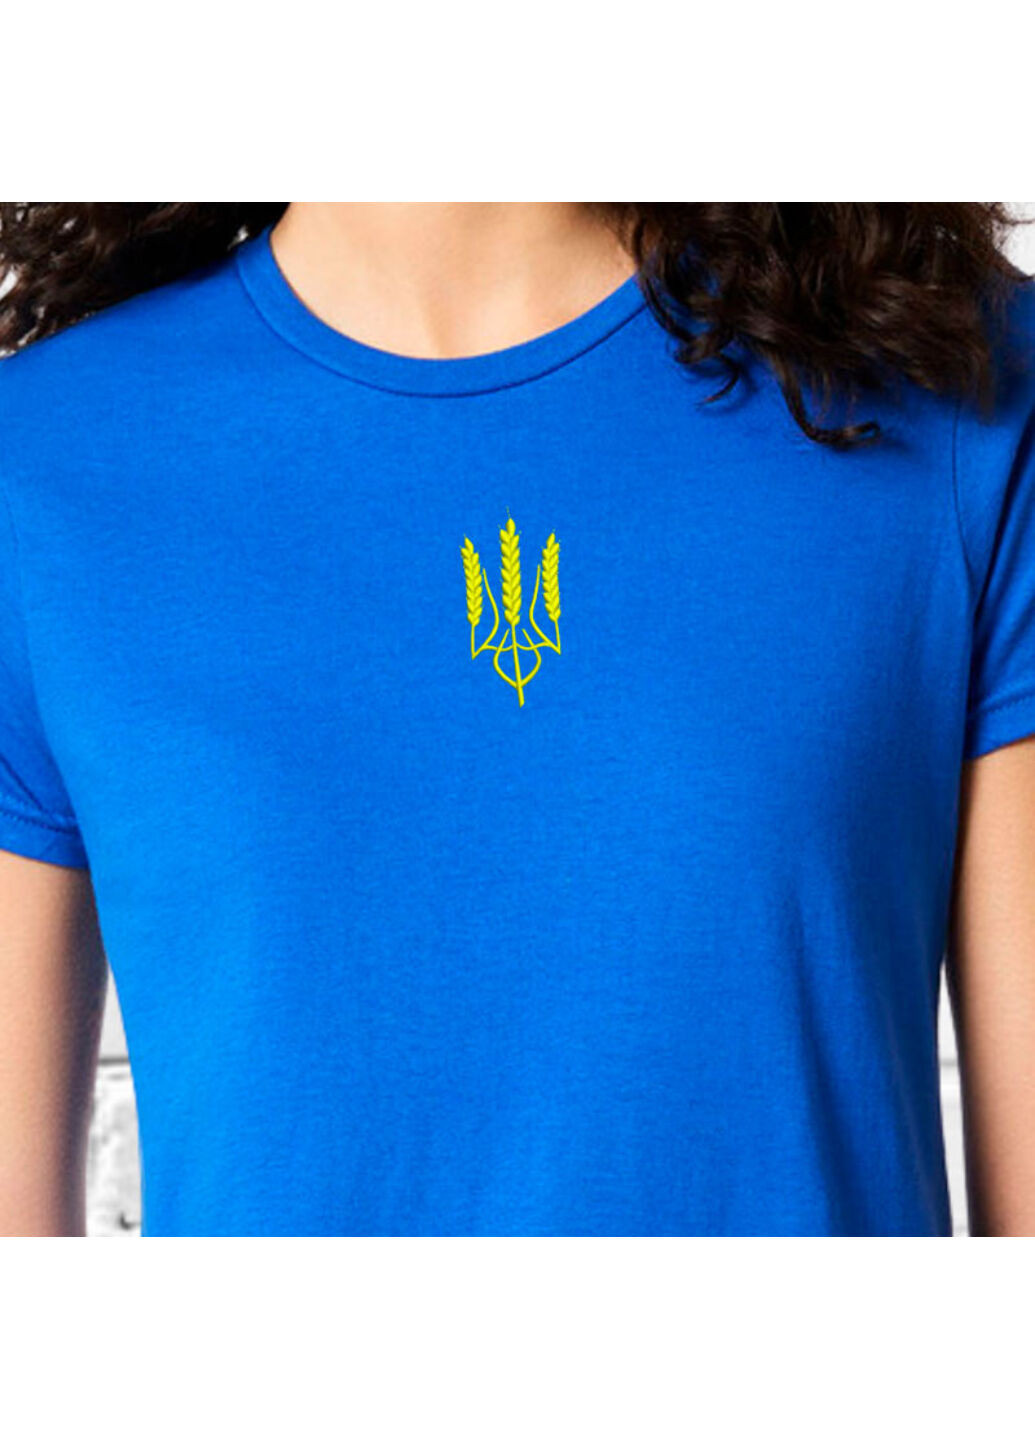 Синяя футболка з вишивкою тризуба (колос) 02-2 женская синий m No Brand